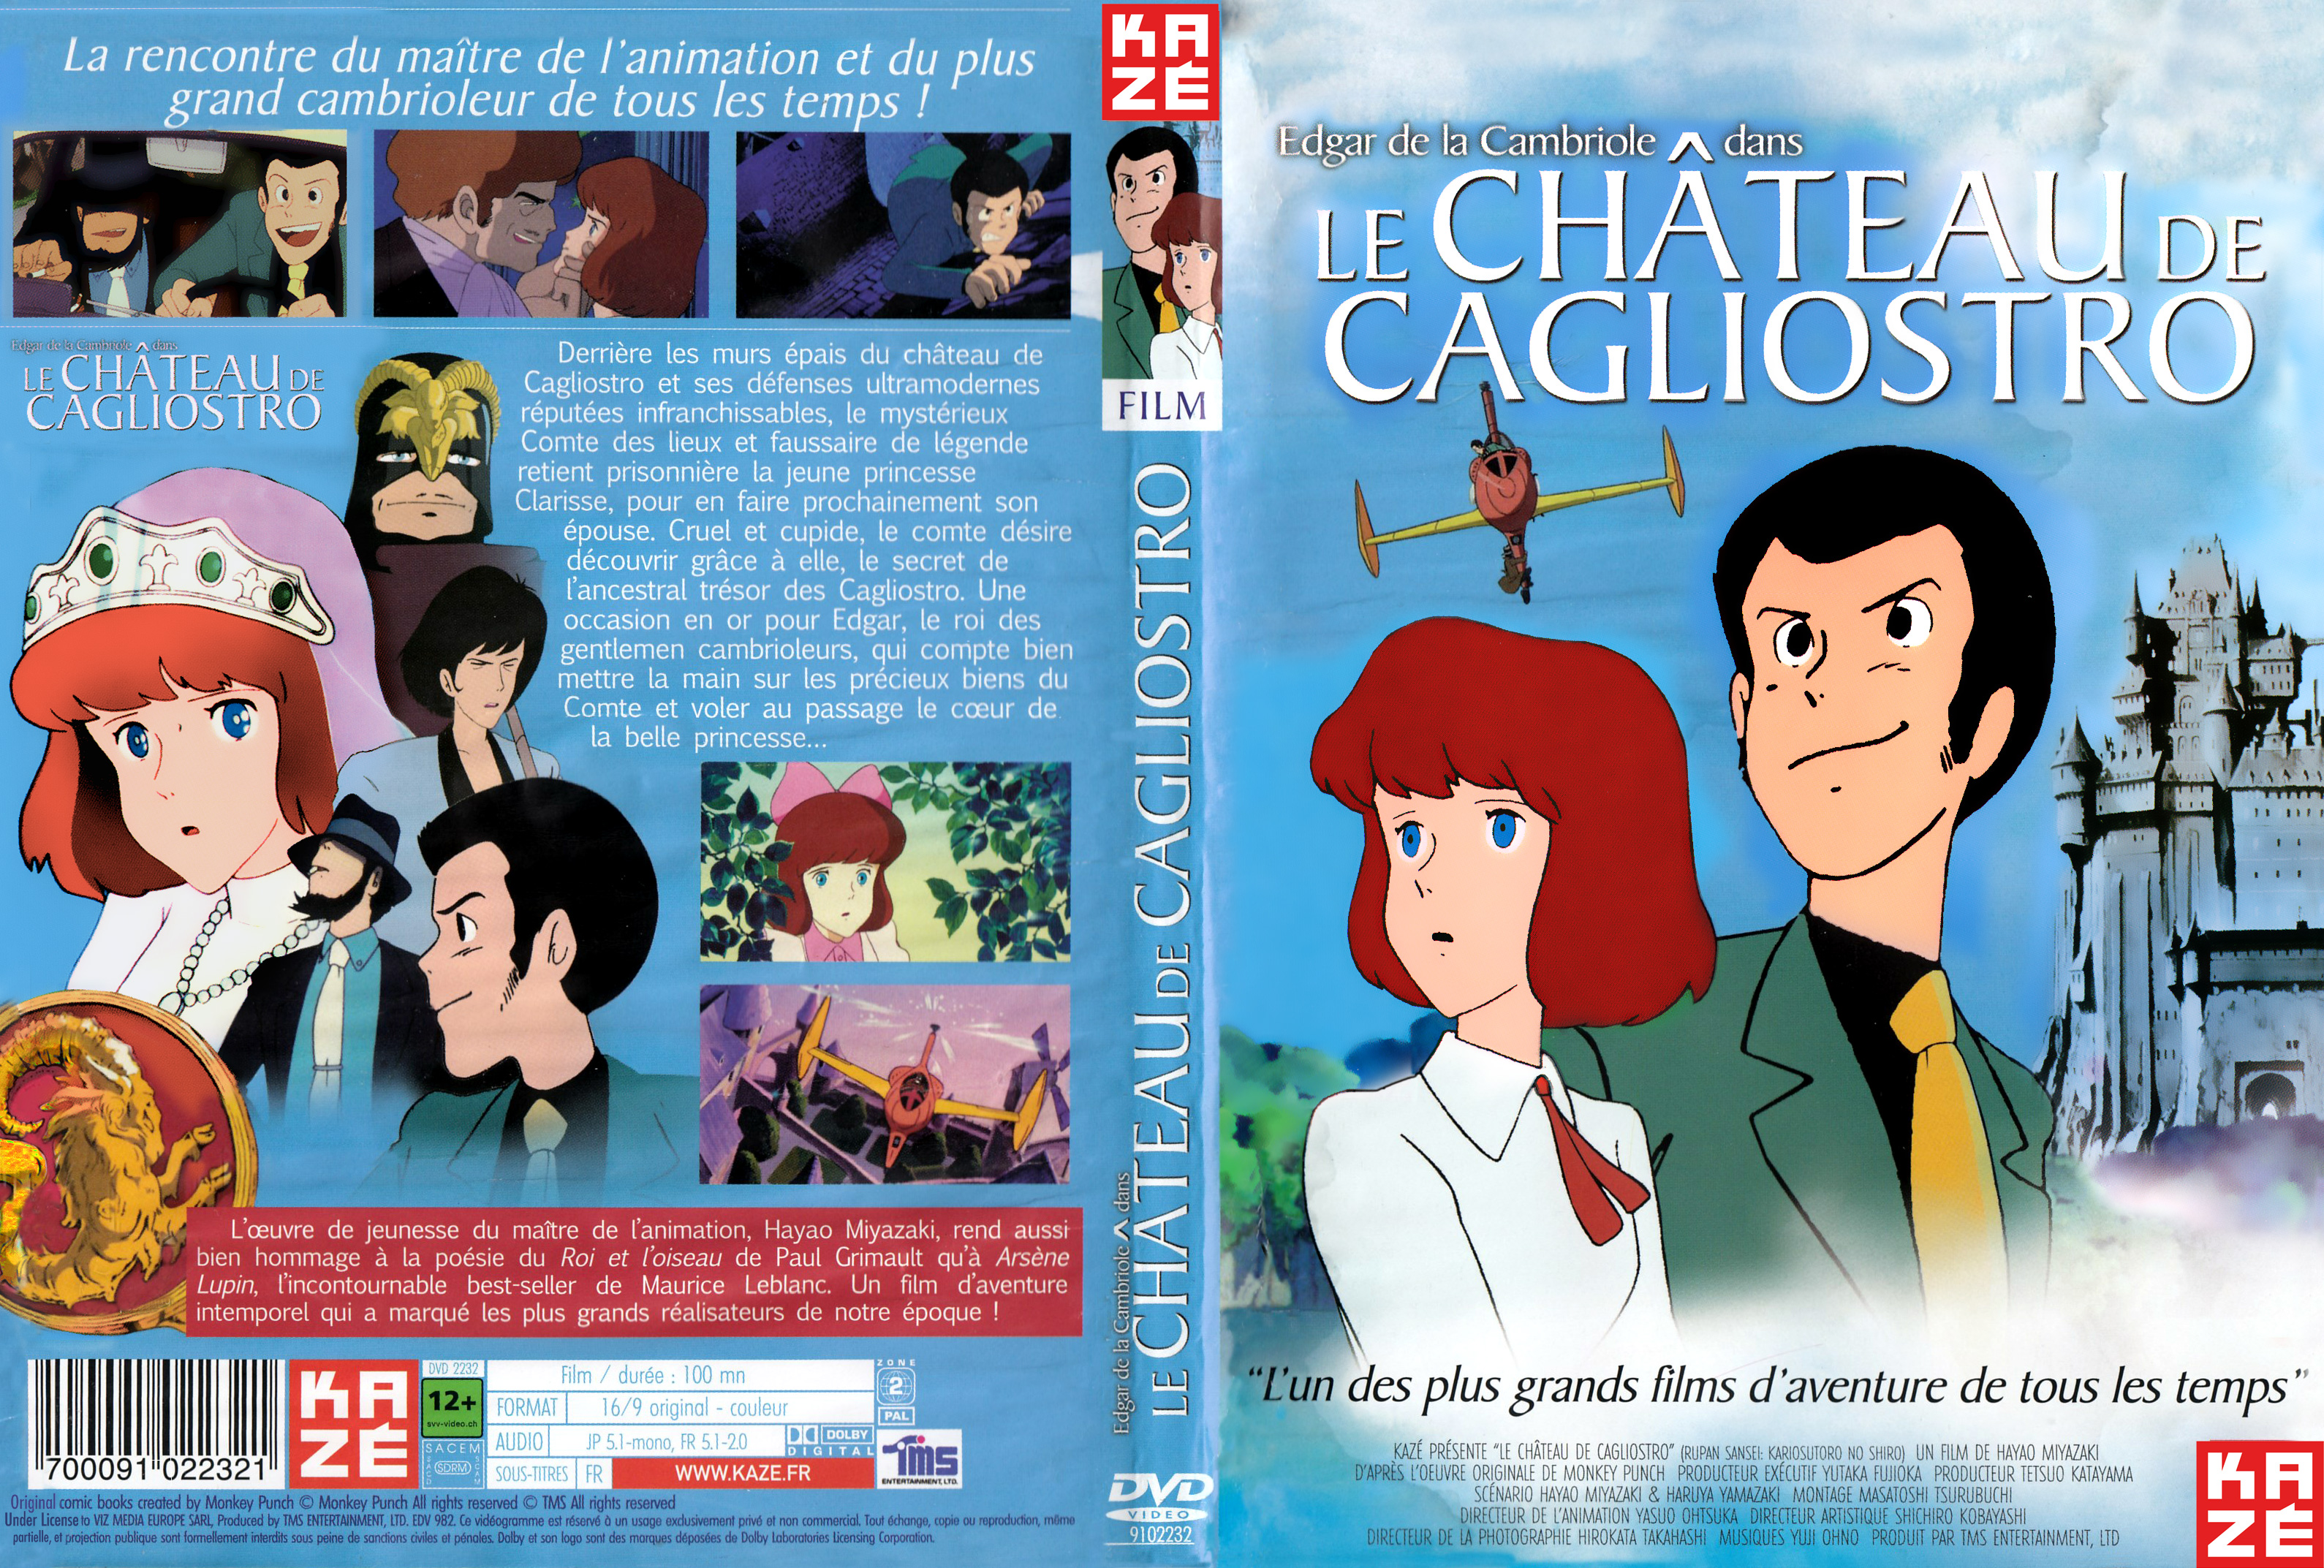 Jaquette DVD Le chateau de Cagliostro v4